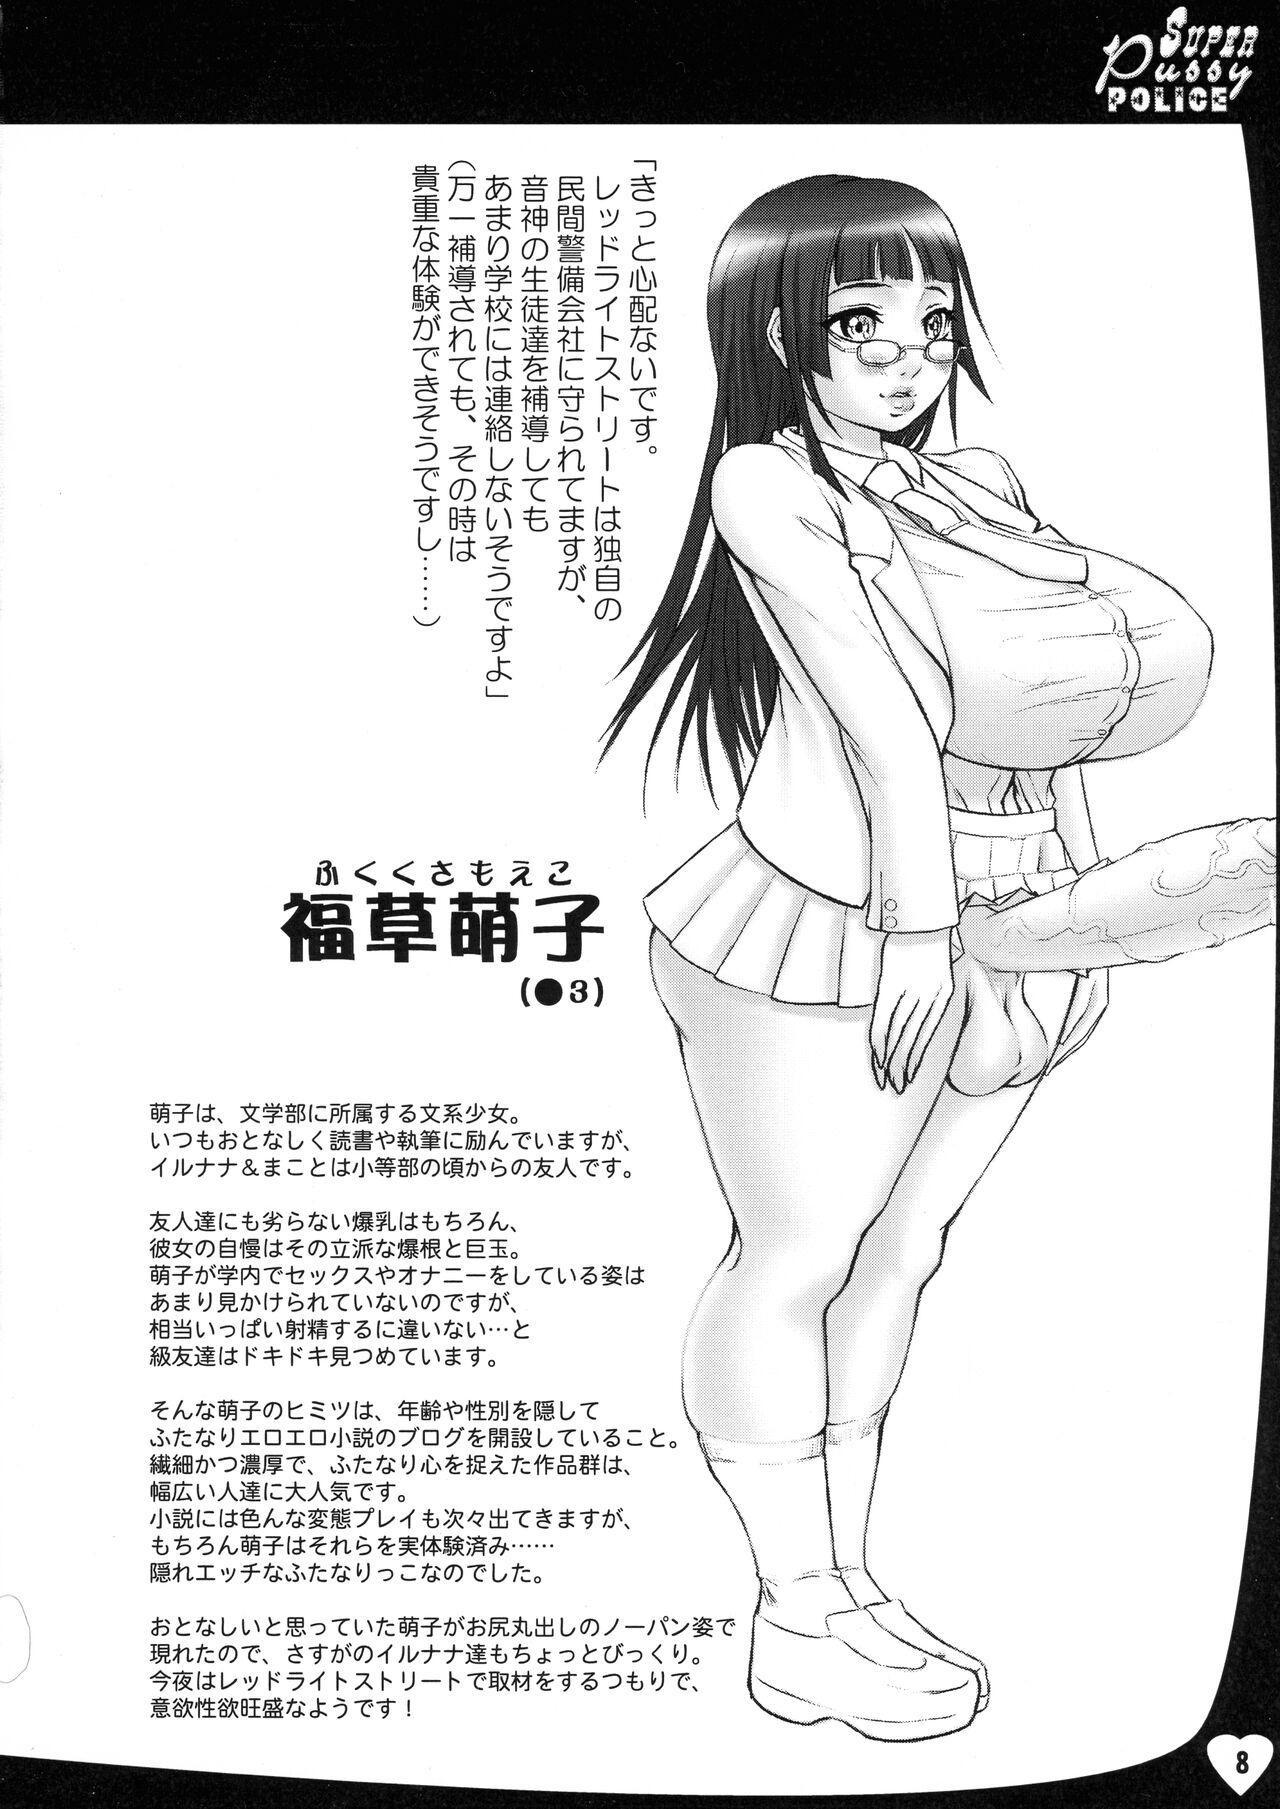 Porn Pussy SPP Super Pussy Police VS Bakuniku Chuugakusei Skype - Page 8